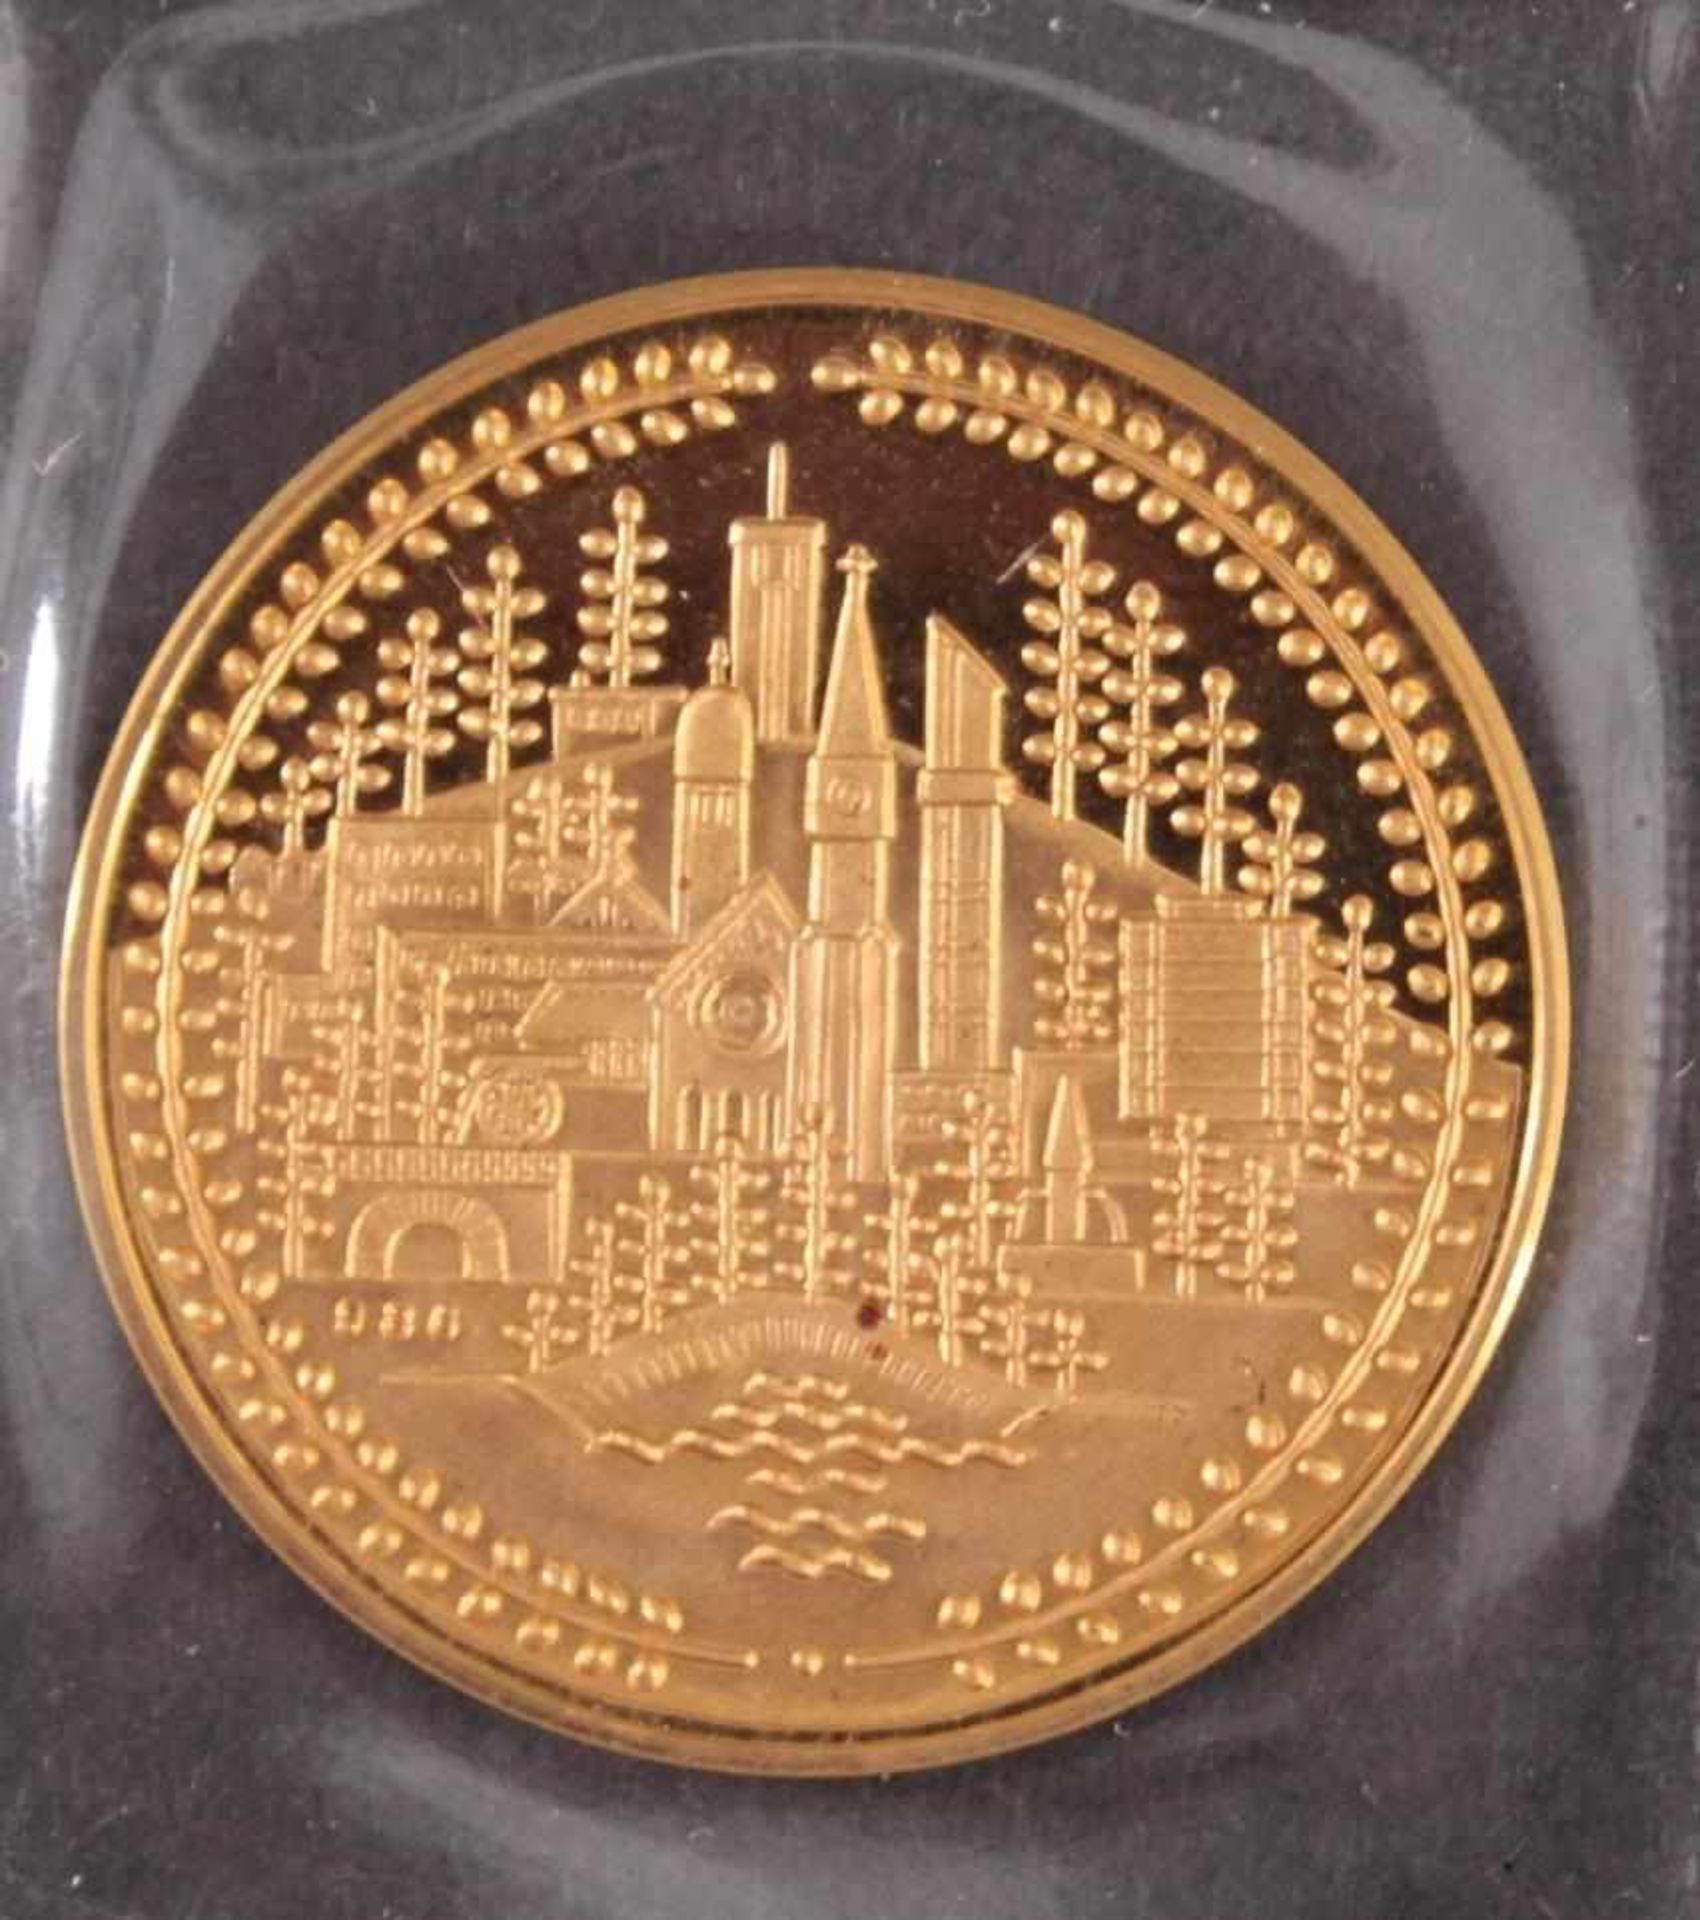 Goldmedaille Stadt Oberkochen 26. Juni 1986Eingeschweißte Medaille, Durchmesser ca. 26 mm, - Image 2 of 2